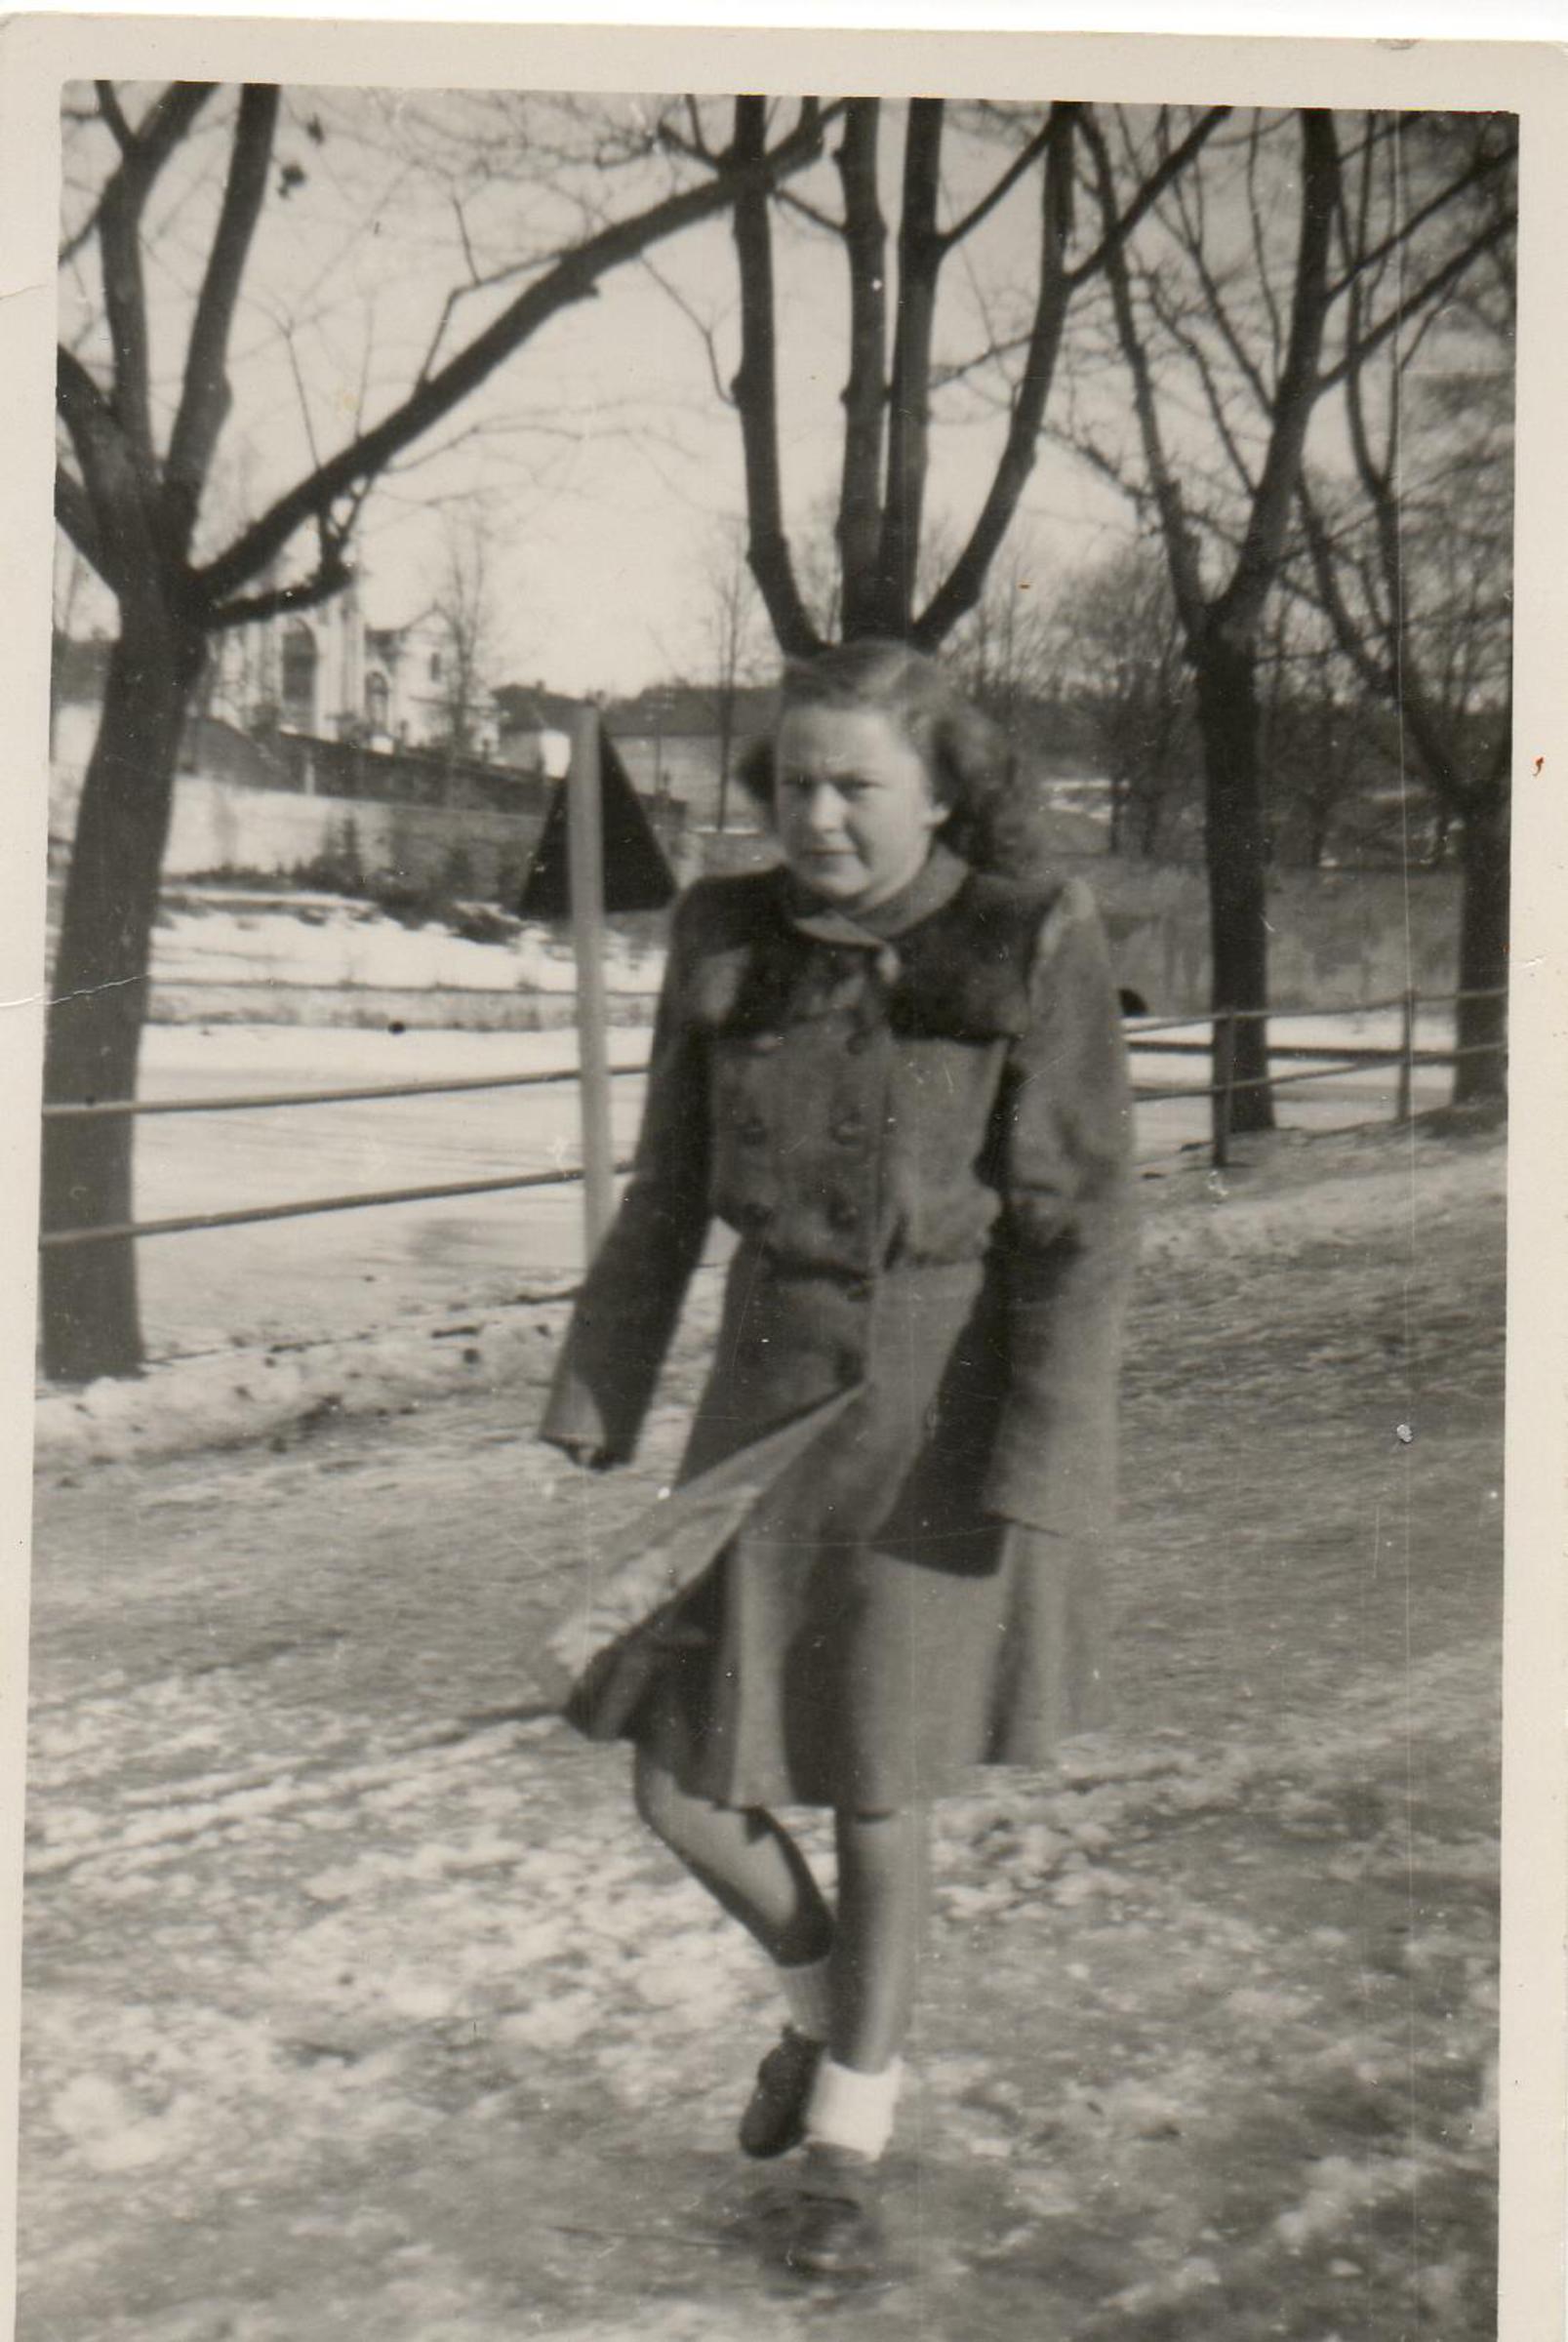 Marta Kadlecová as a young girl, 1944